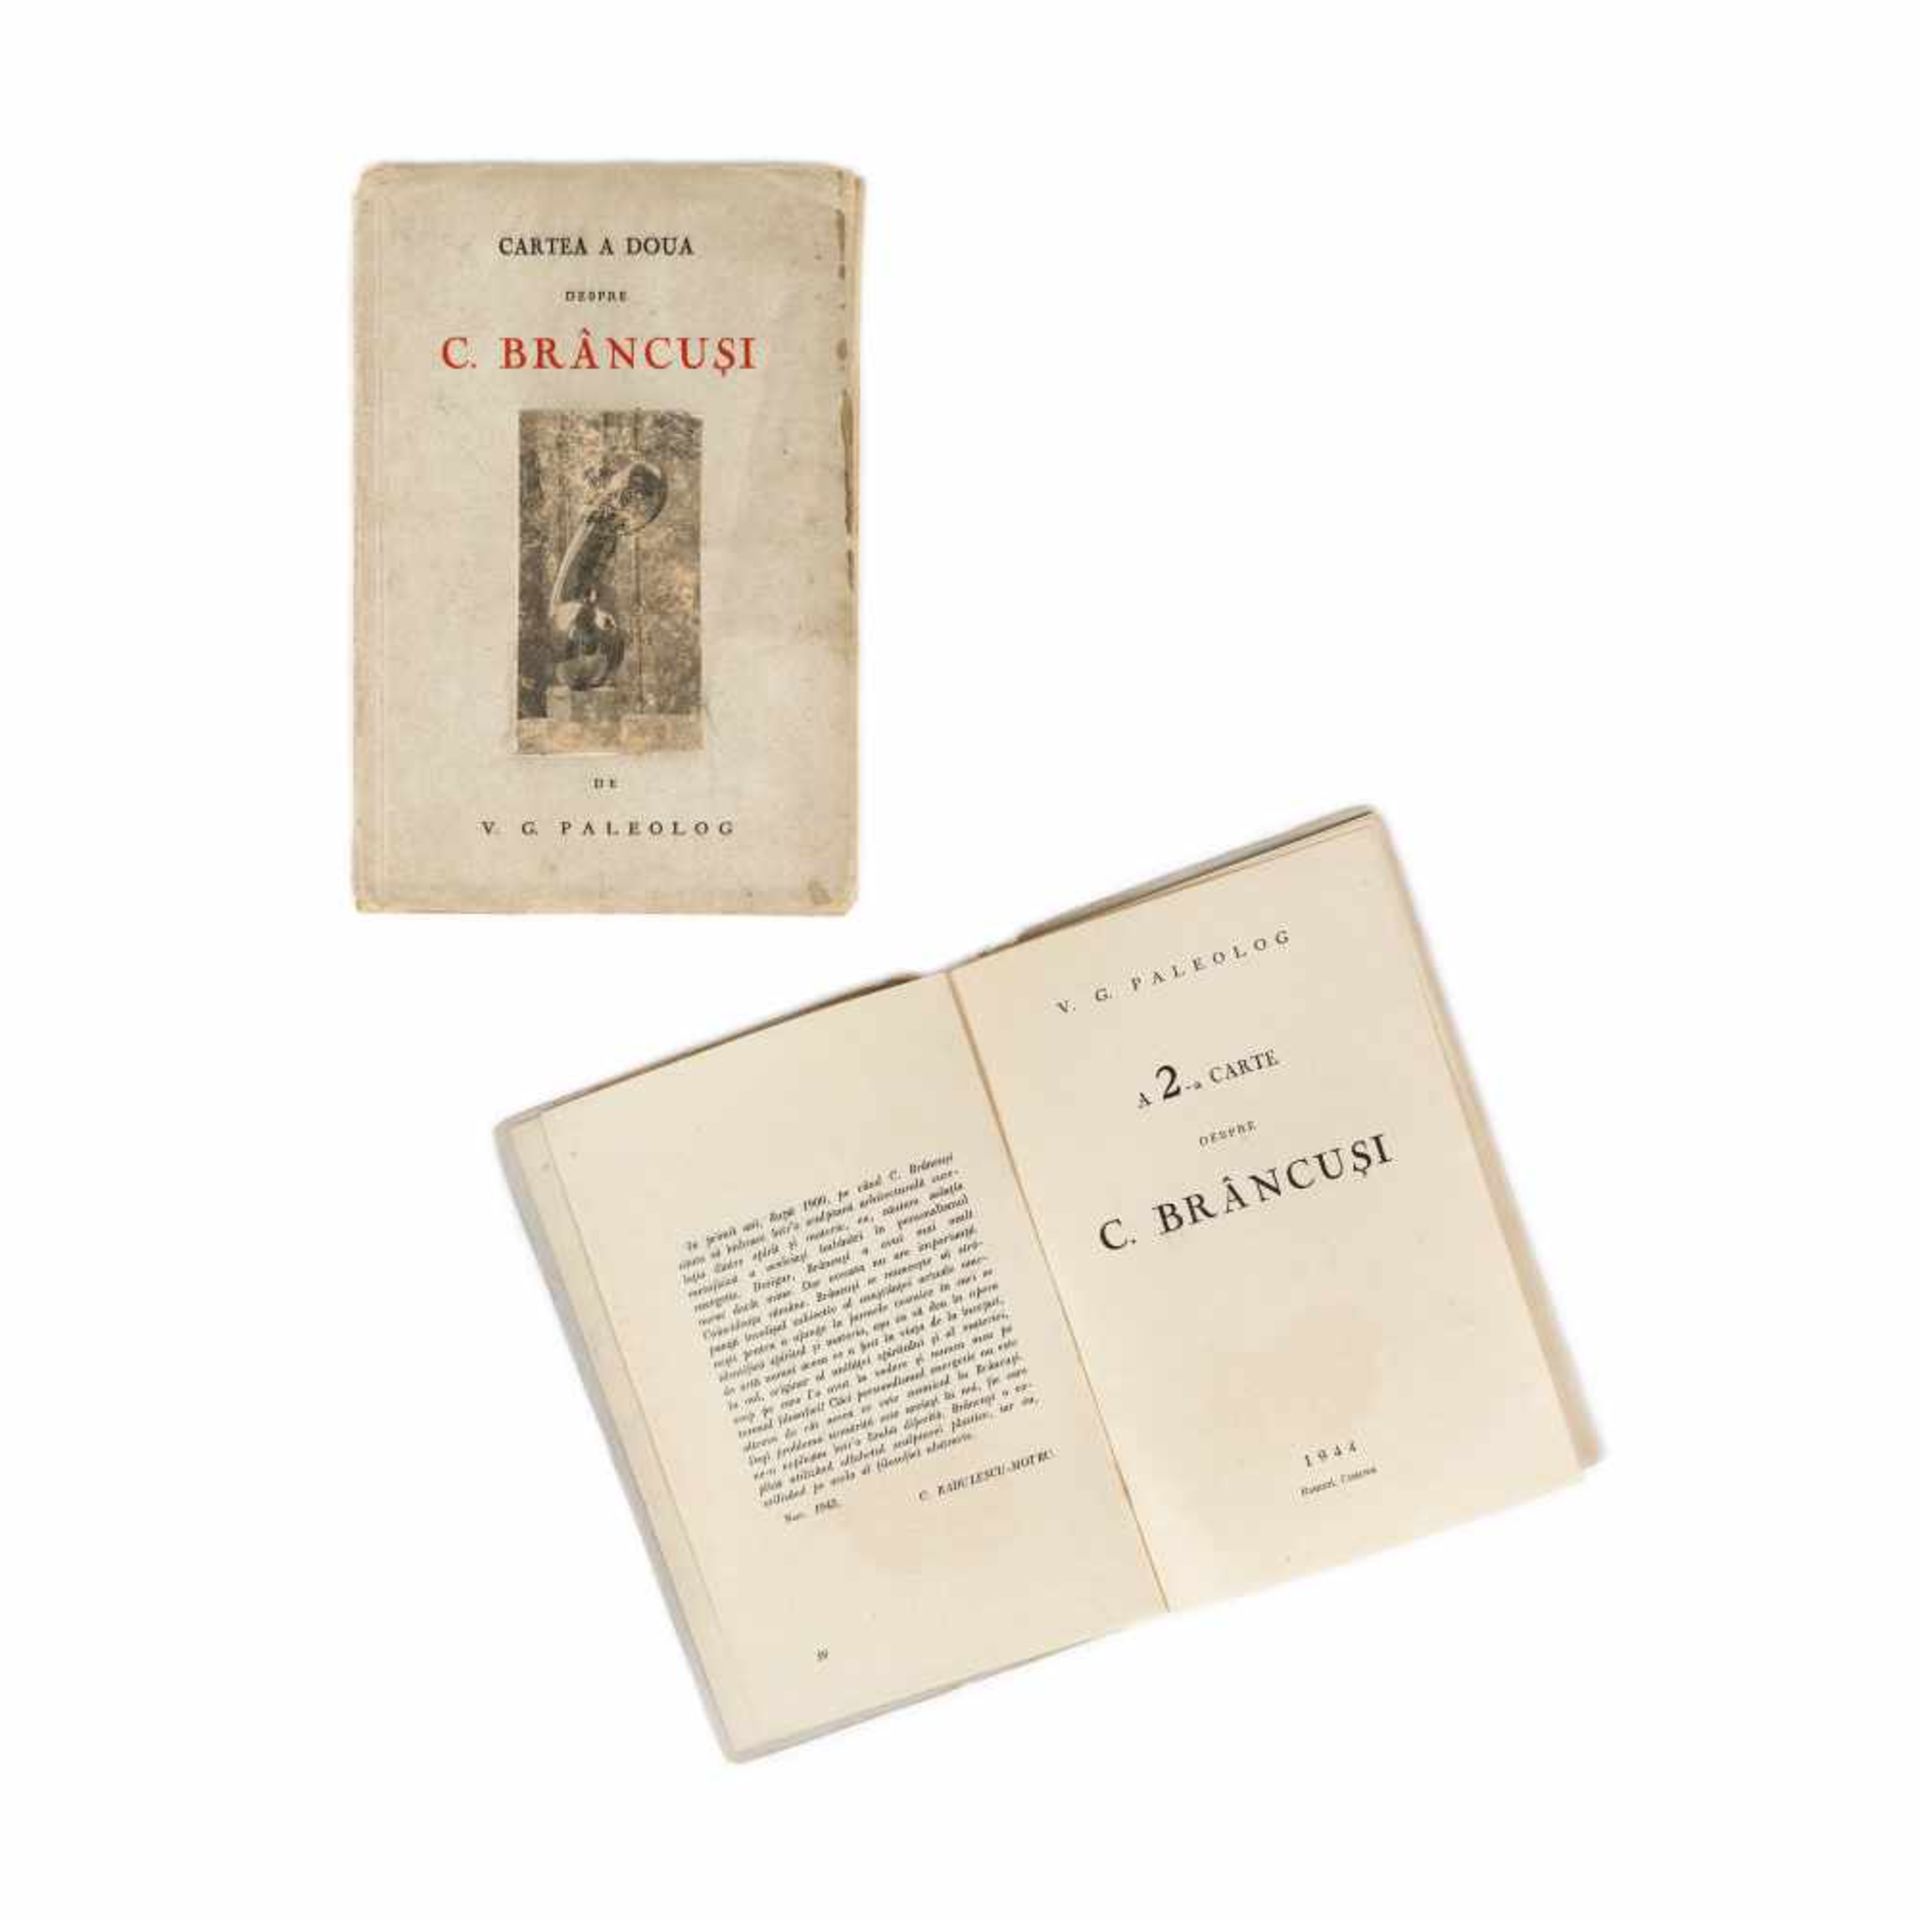 "Cartea a doua despre Constantin Brâncuși" ("The second book about Constantin Brâncuși"), by Vas